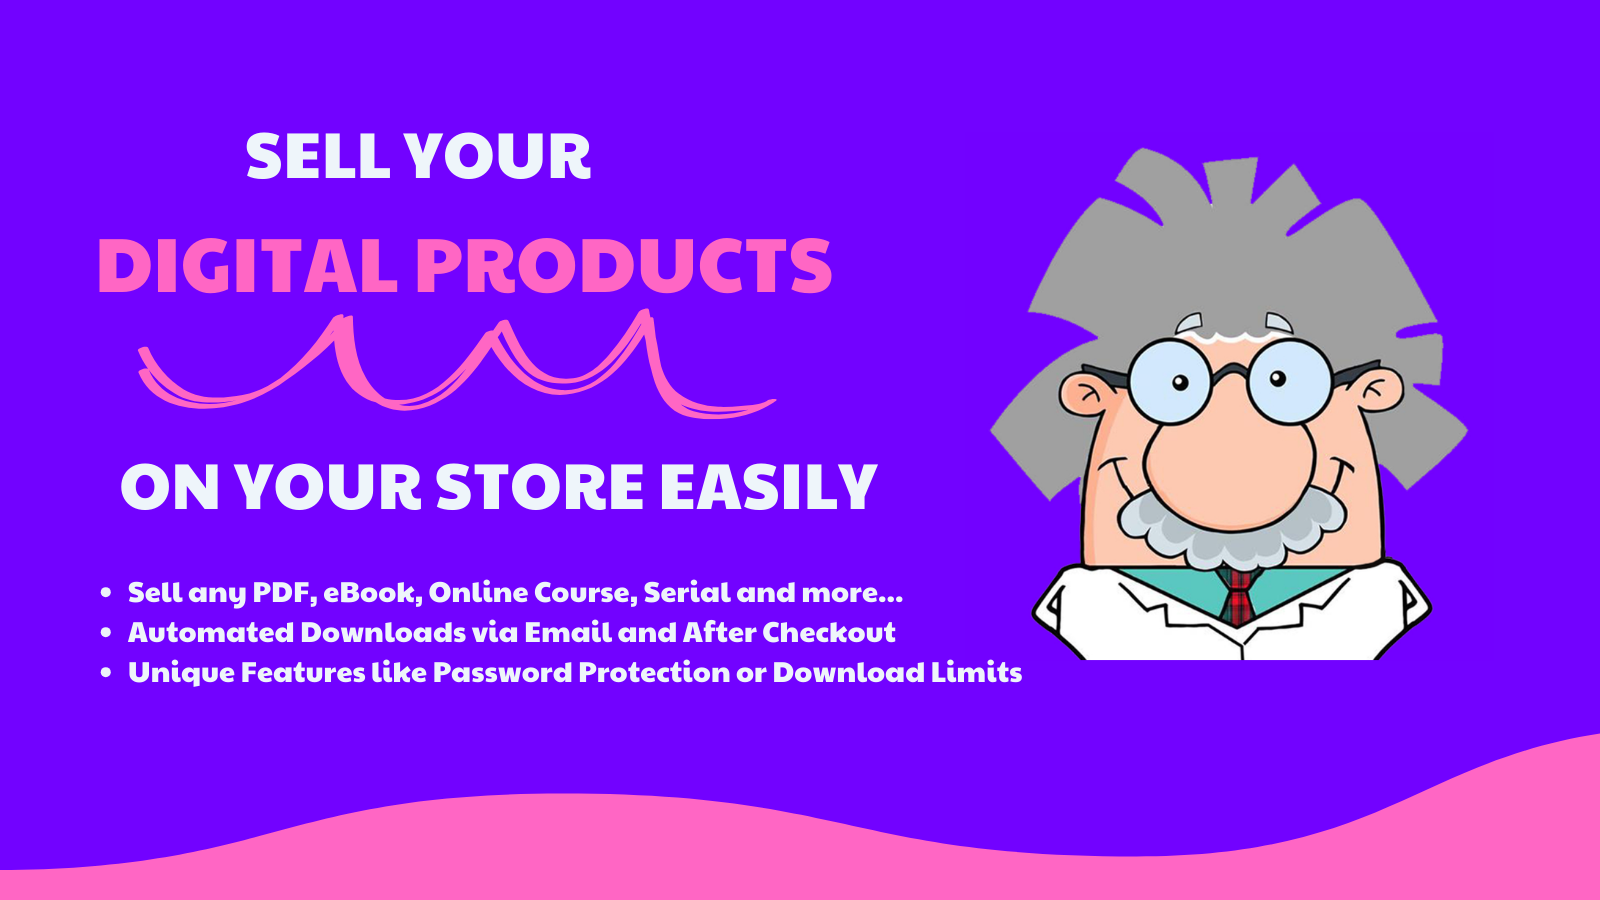 Sälj dina digitala produkter i din butik enkelt